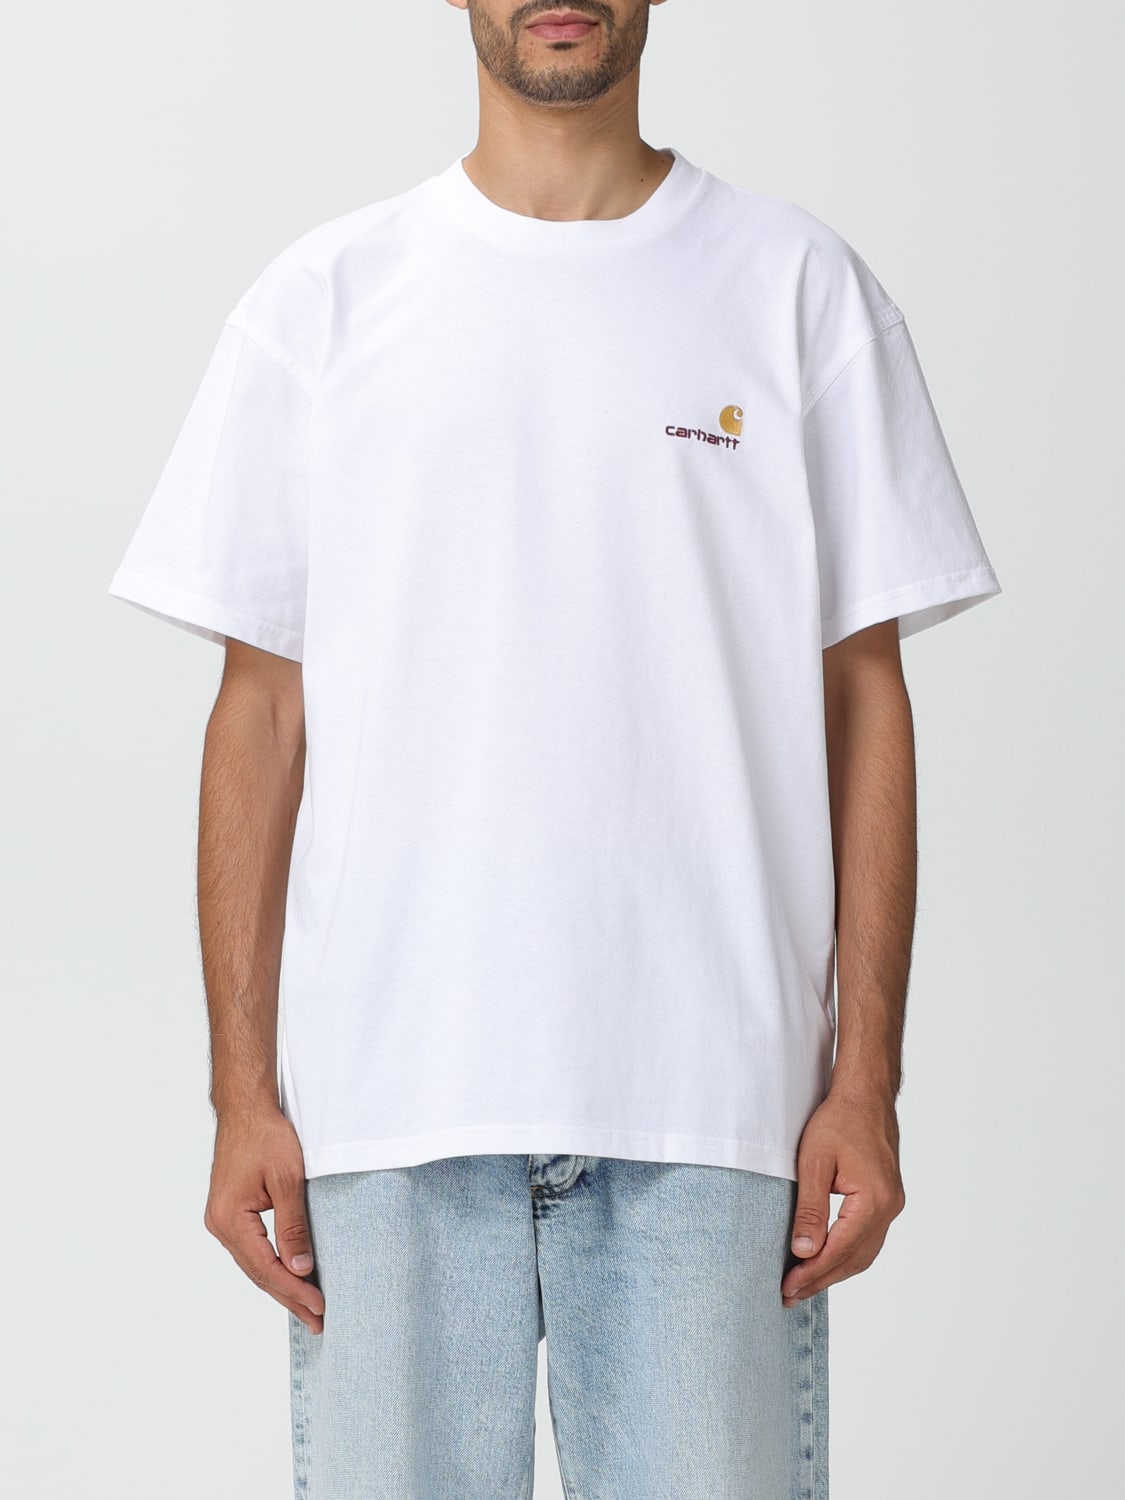 T-shirt Carhartt Wip homme